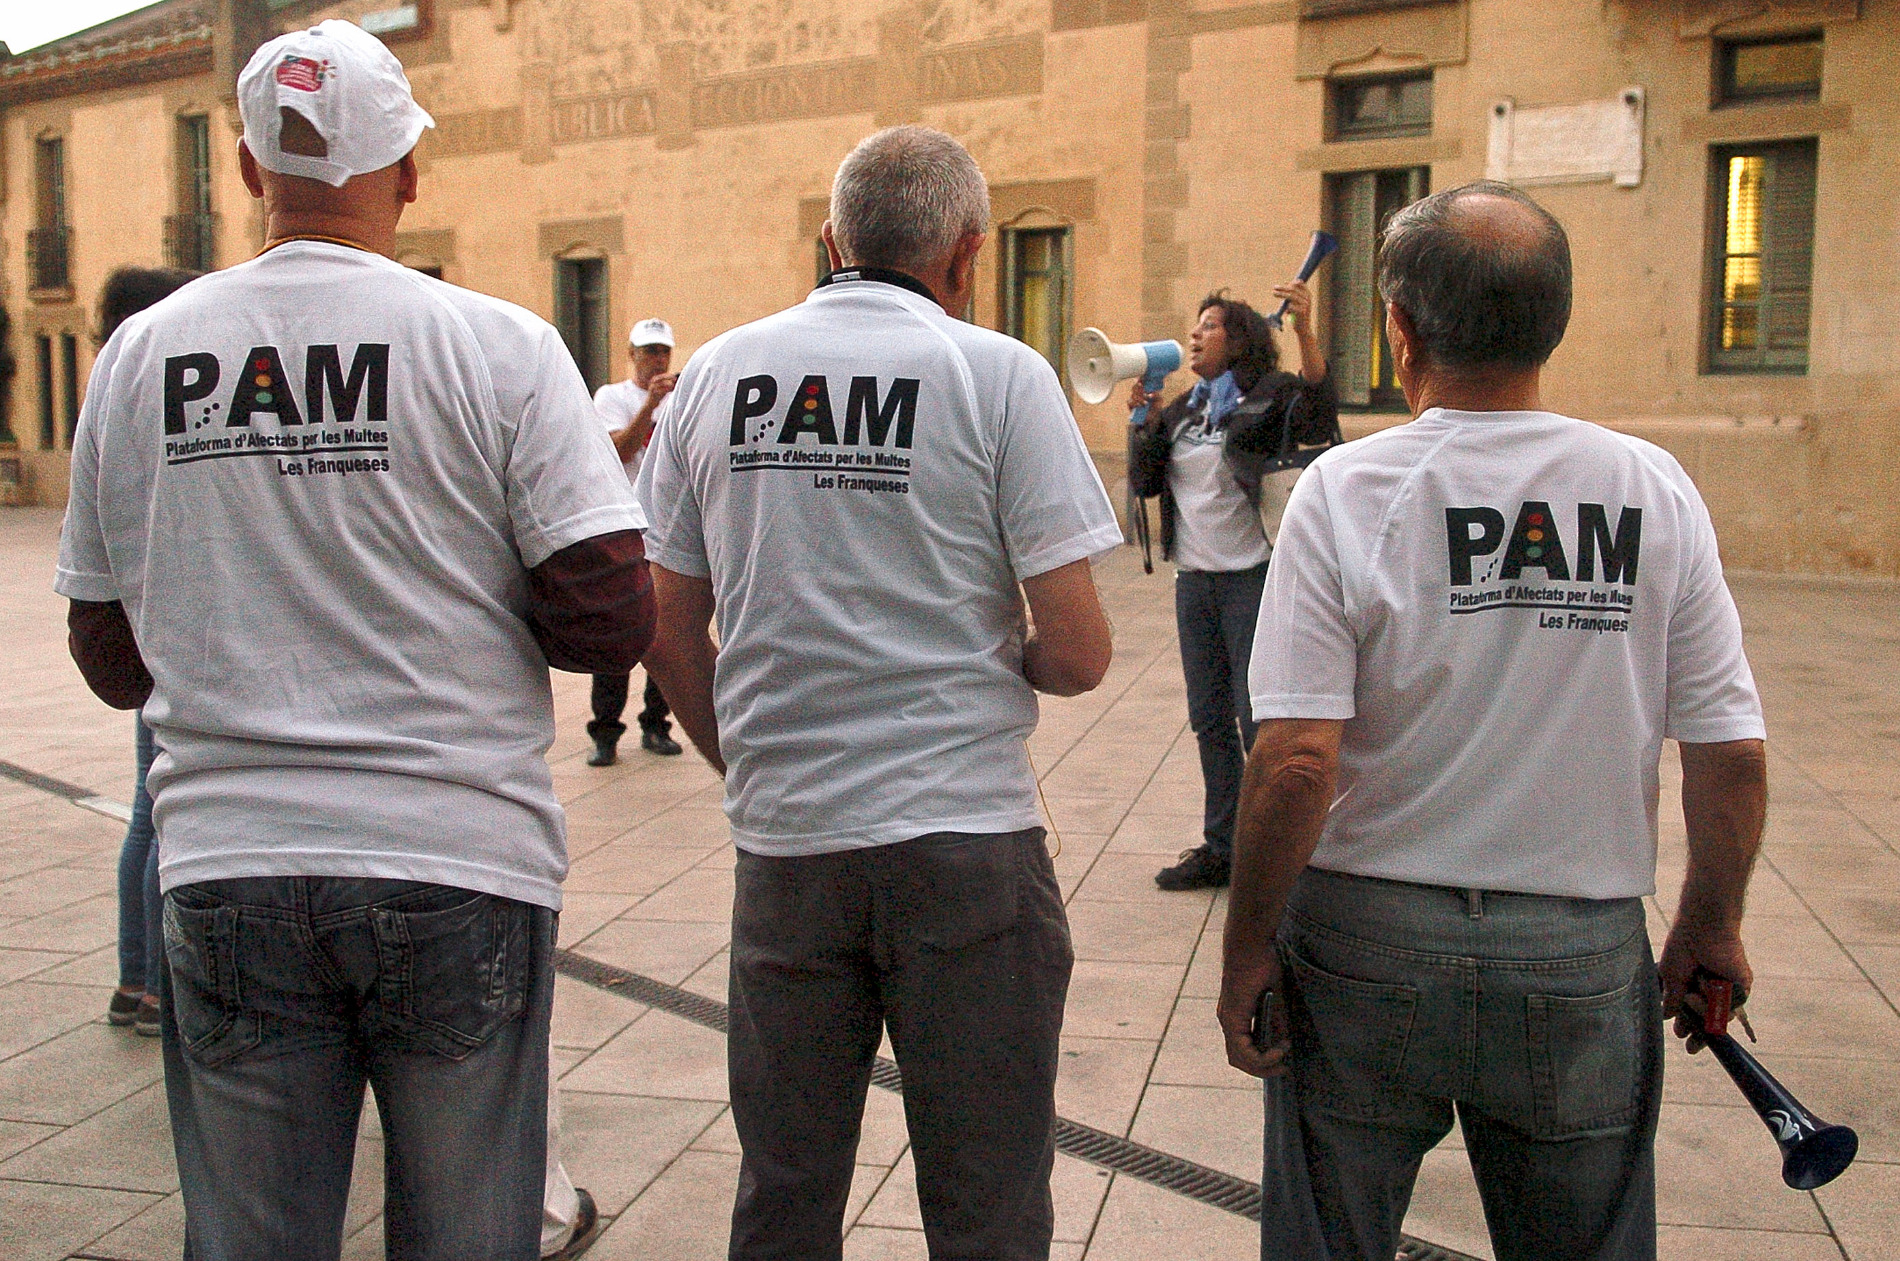 Membres de la PAM davant de l'ajuntament de les Franqueses en una protesta